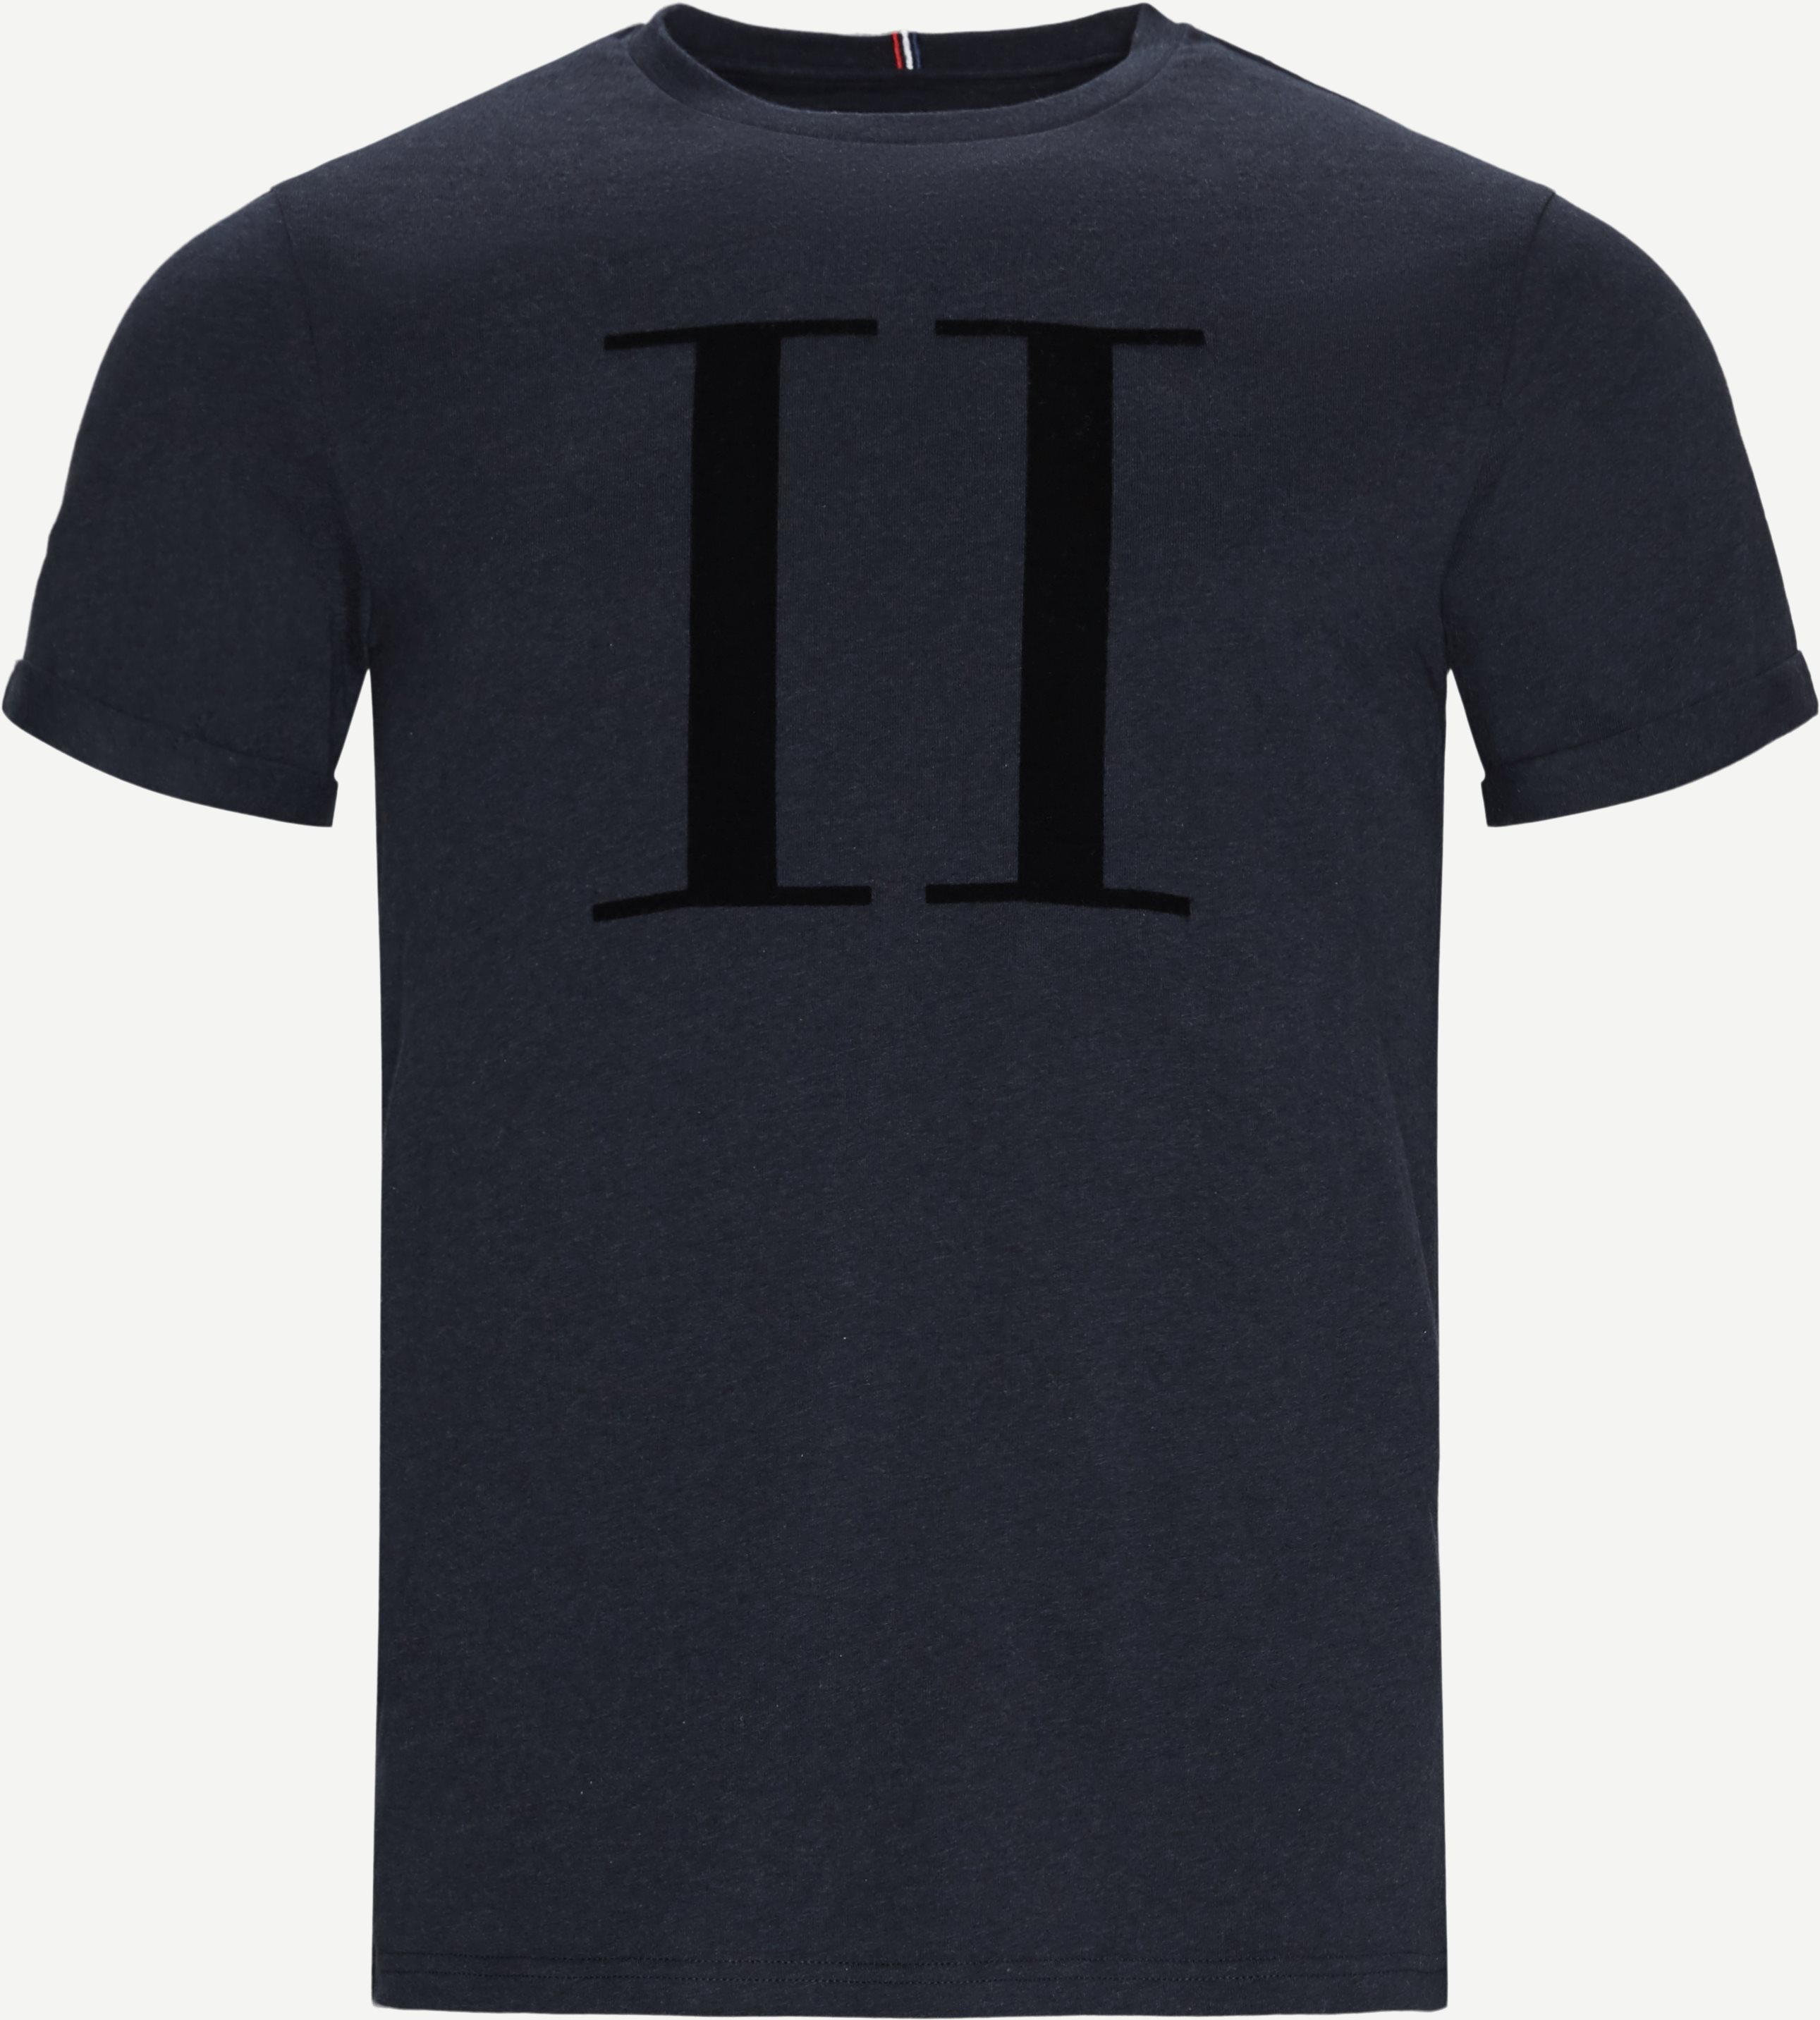 Encore T-shirt - T-shirts - Regular fit - Blå